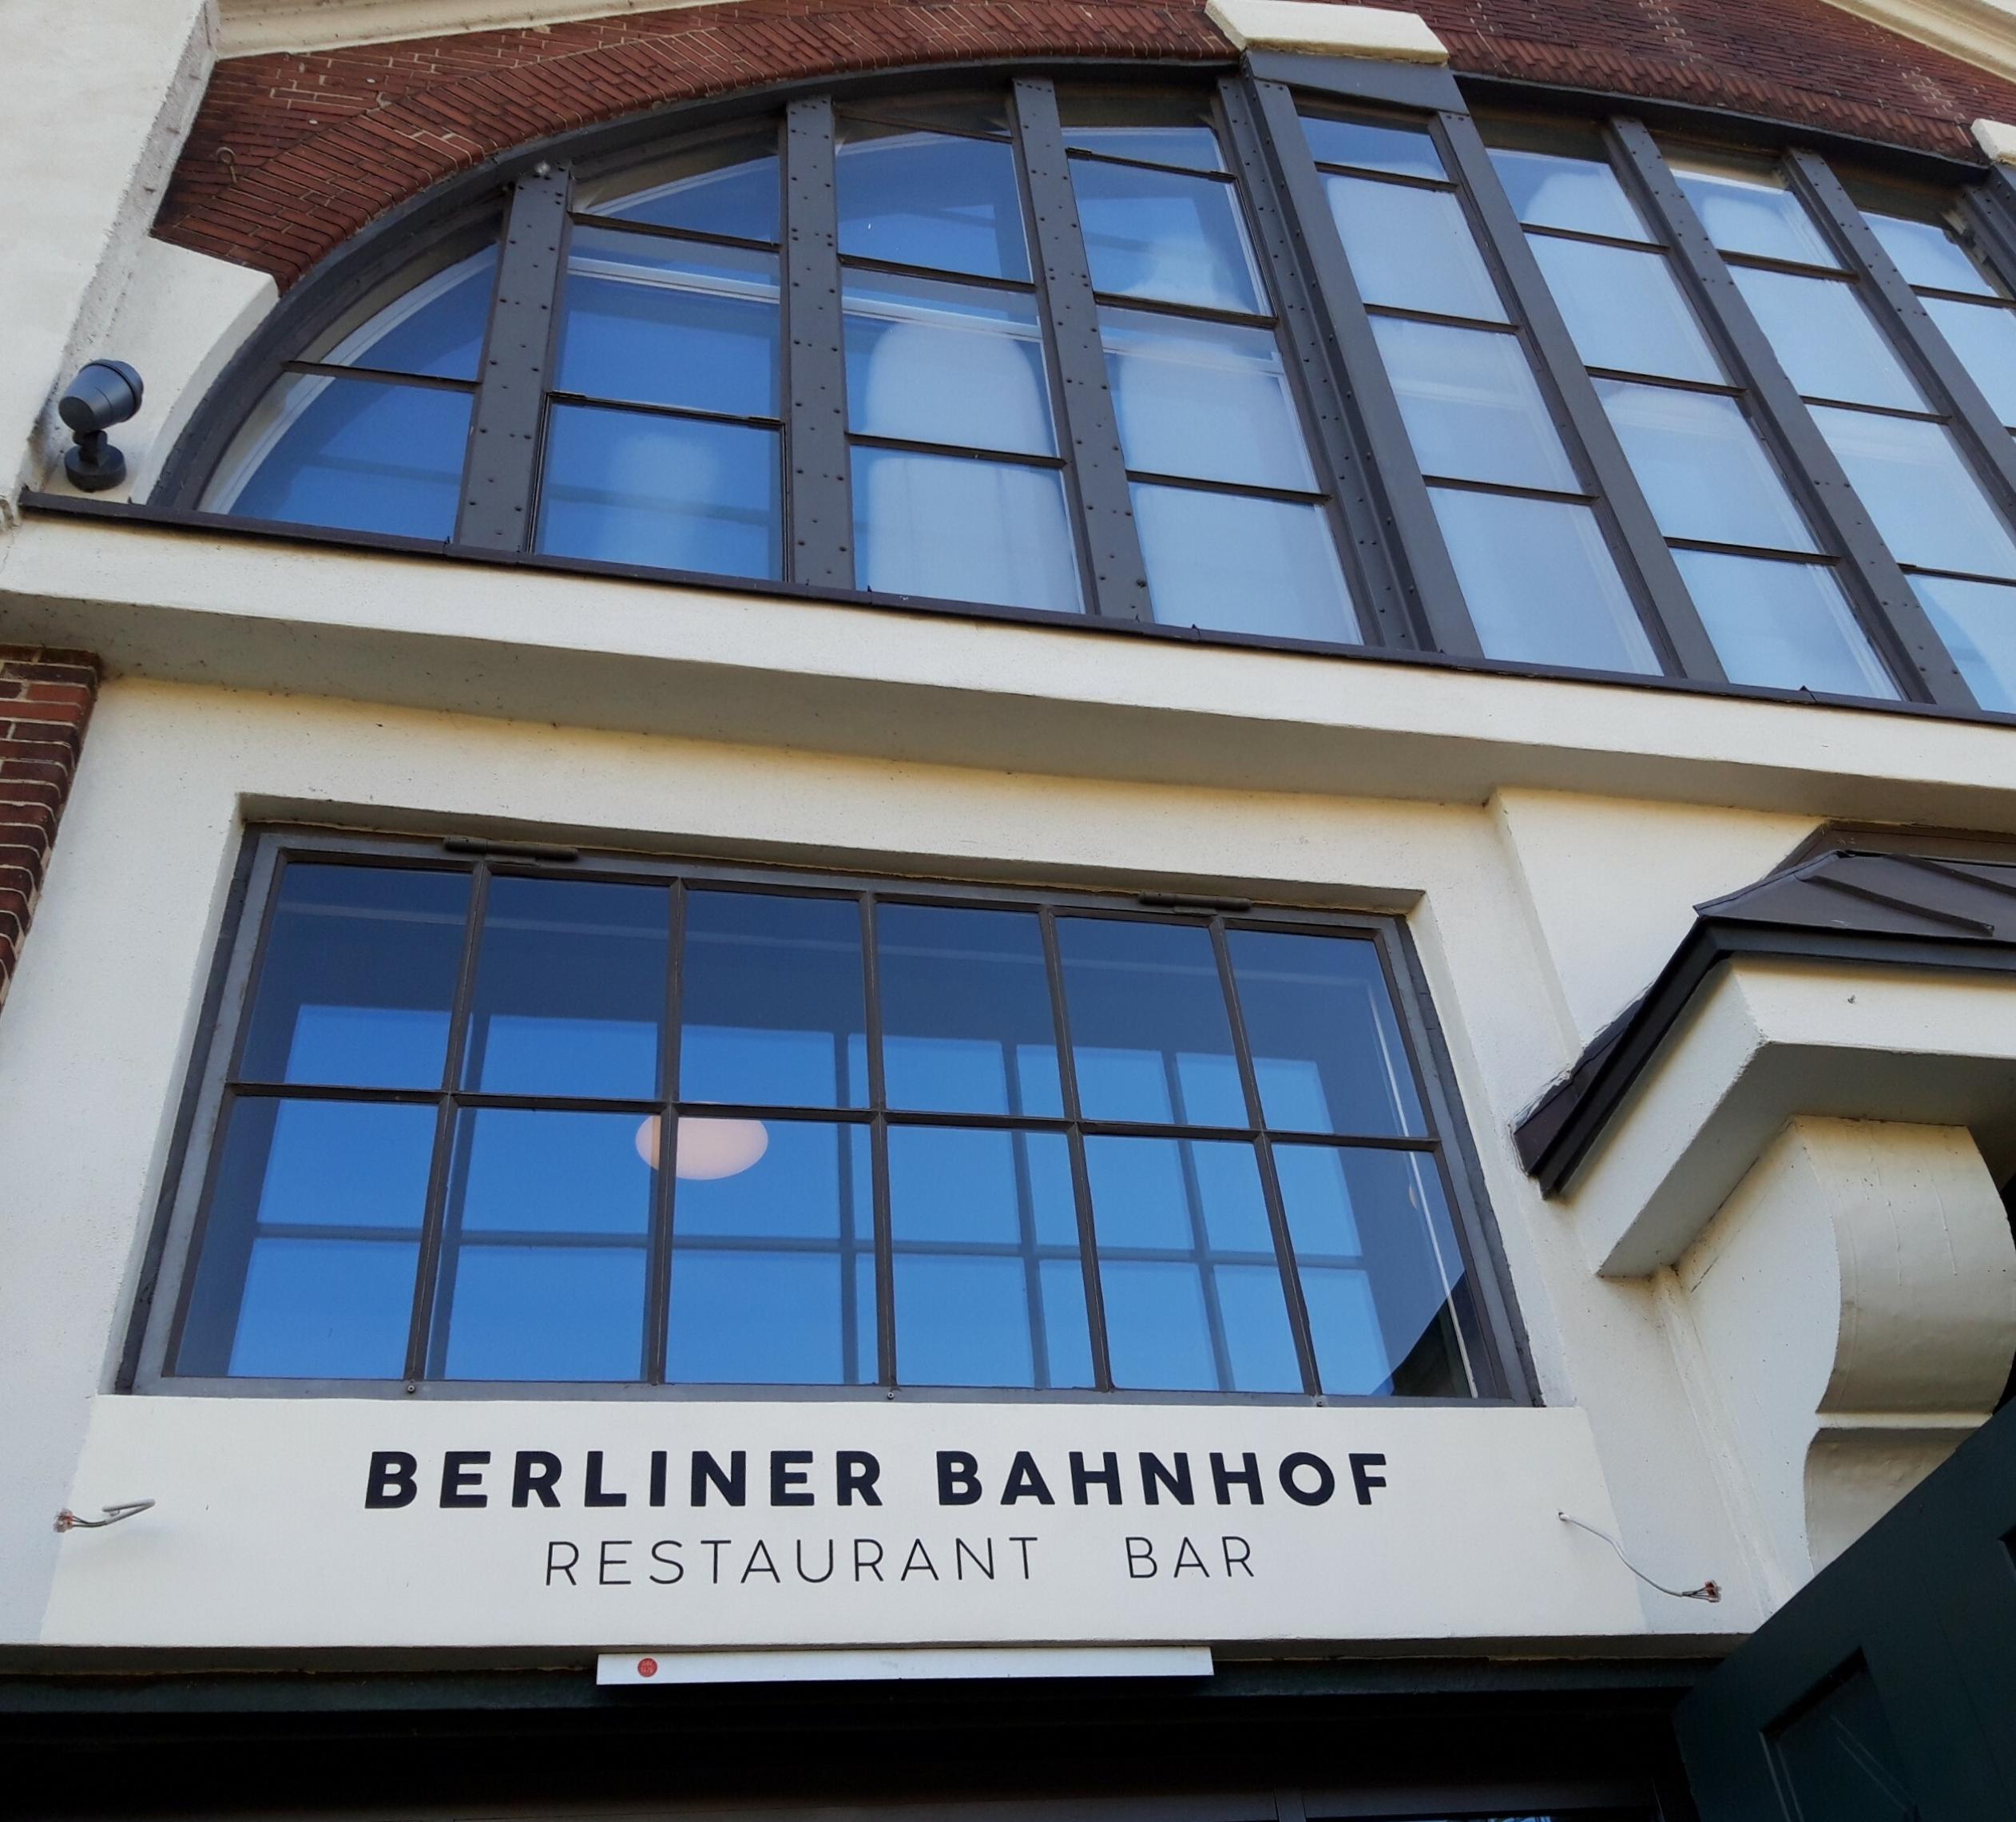 Zwischen einem großen, zuoberst angeordneten Halbrundfenster und einem Rechteckfenster prangen die Lettern „Berliner Bahnhof – Restaurant, Bar“.